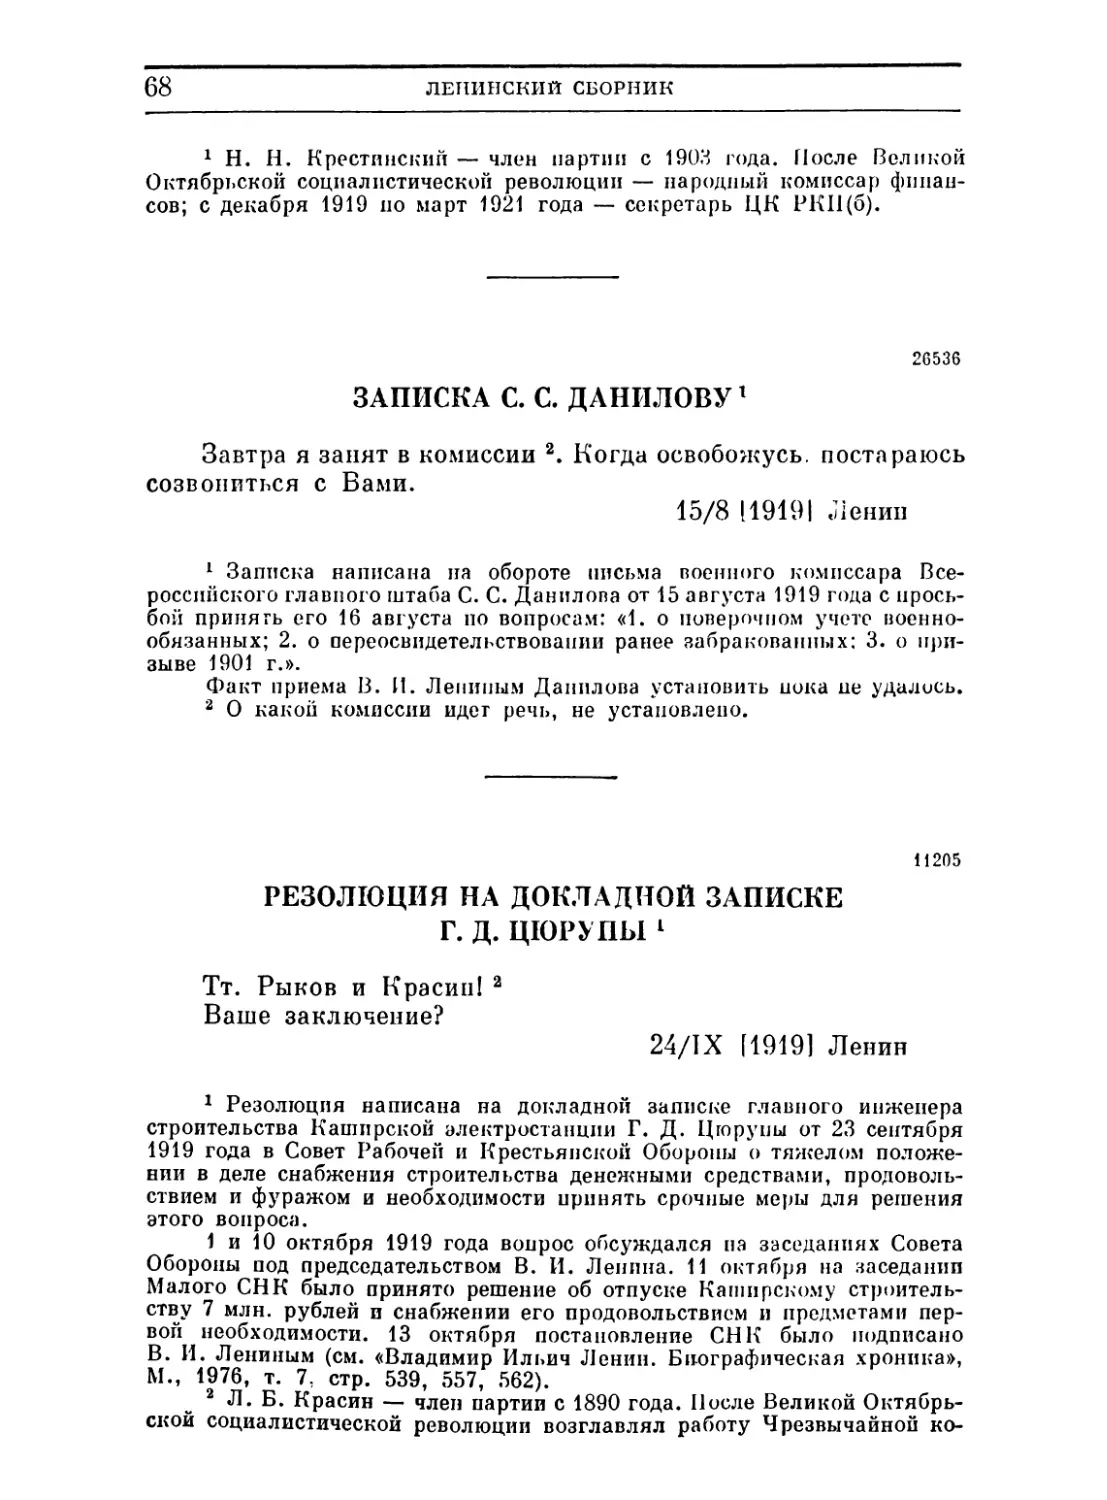 Записка С. С. Данилову. 15 августа 1919
Резолюция на докладной записке Г. Д. Цюрупы. 24 сентября 1919